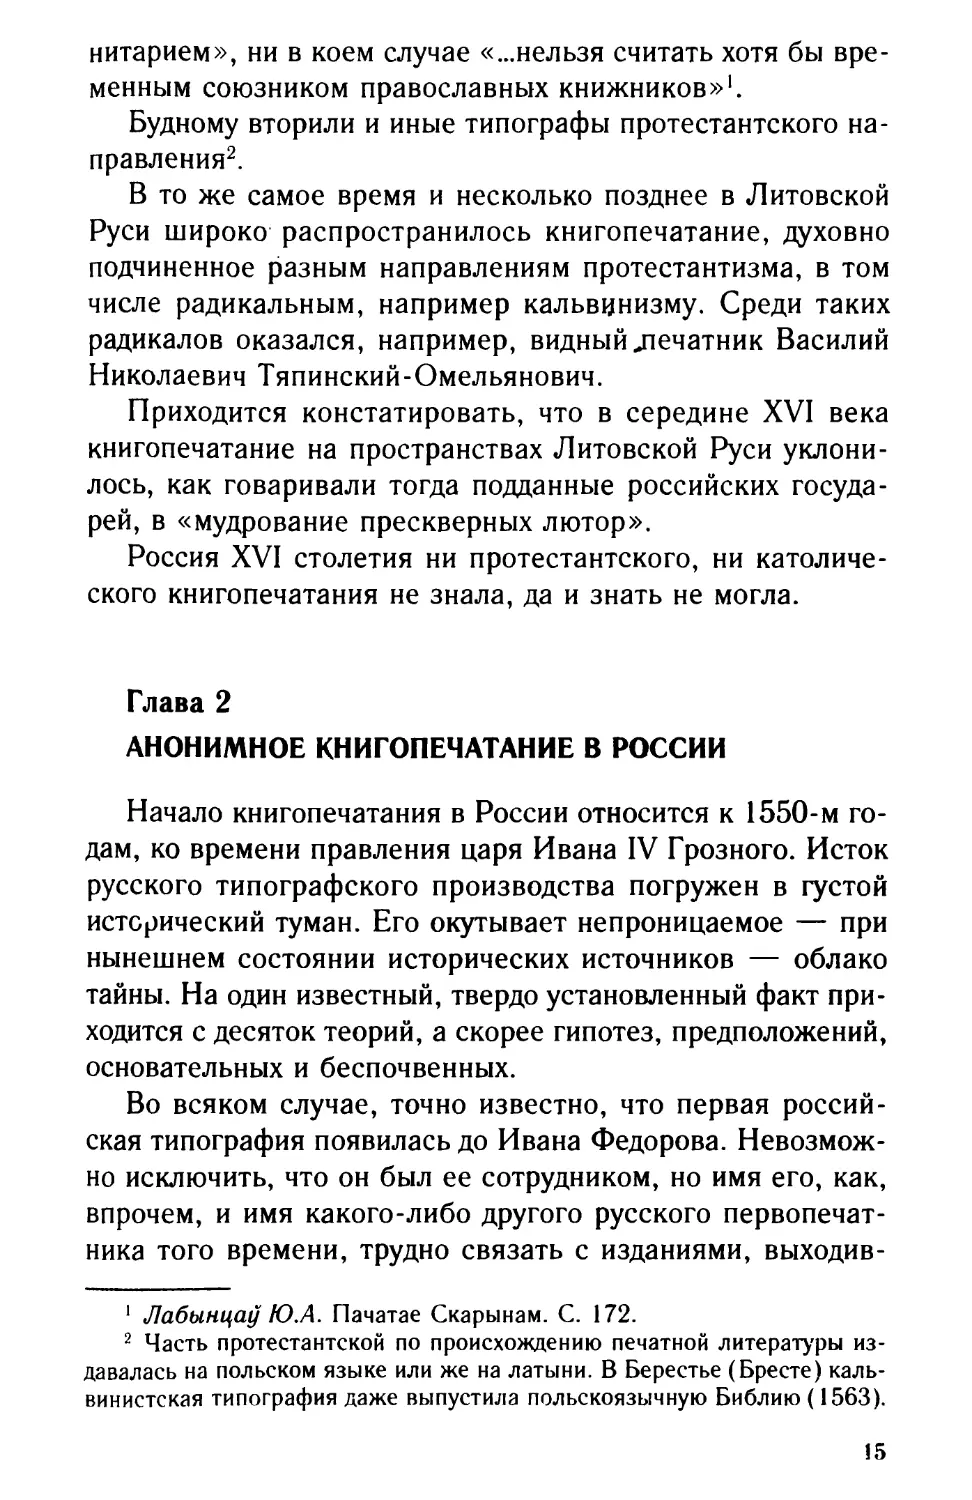 Глава 2. Анонимное книгопечатание в России